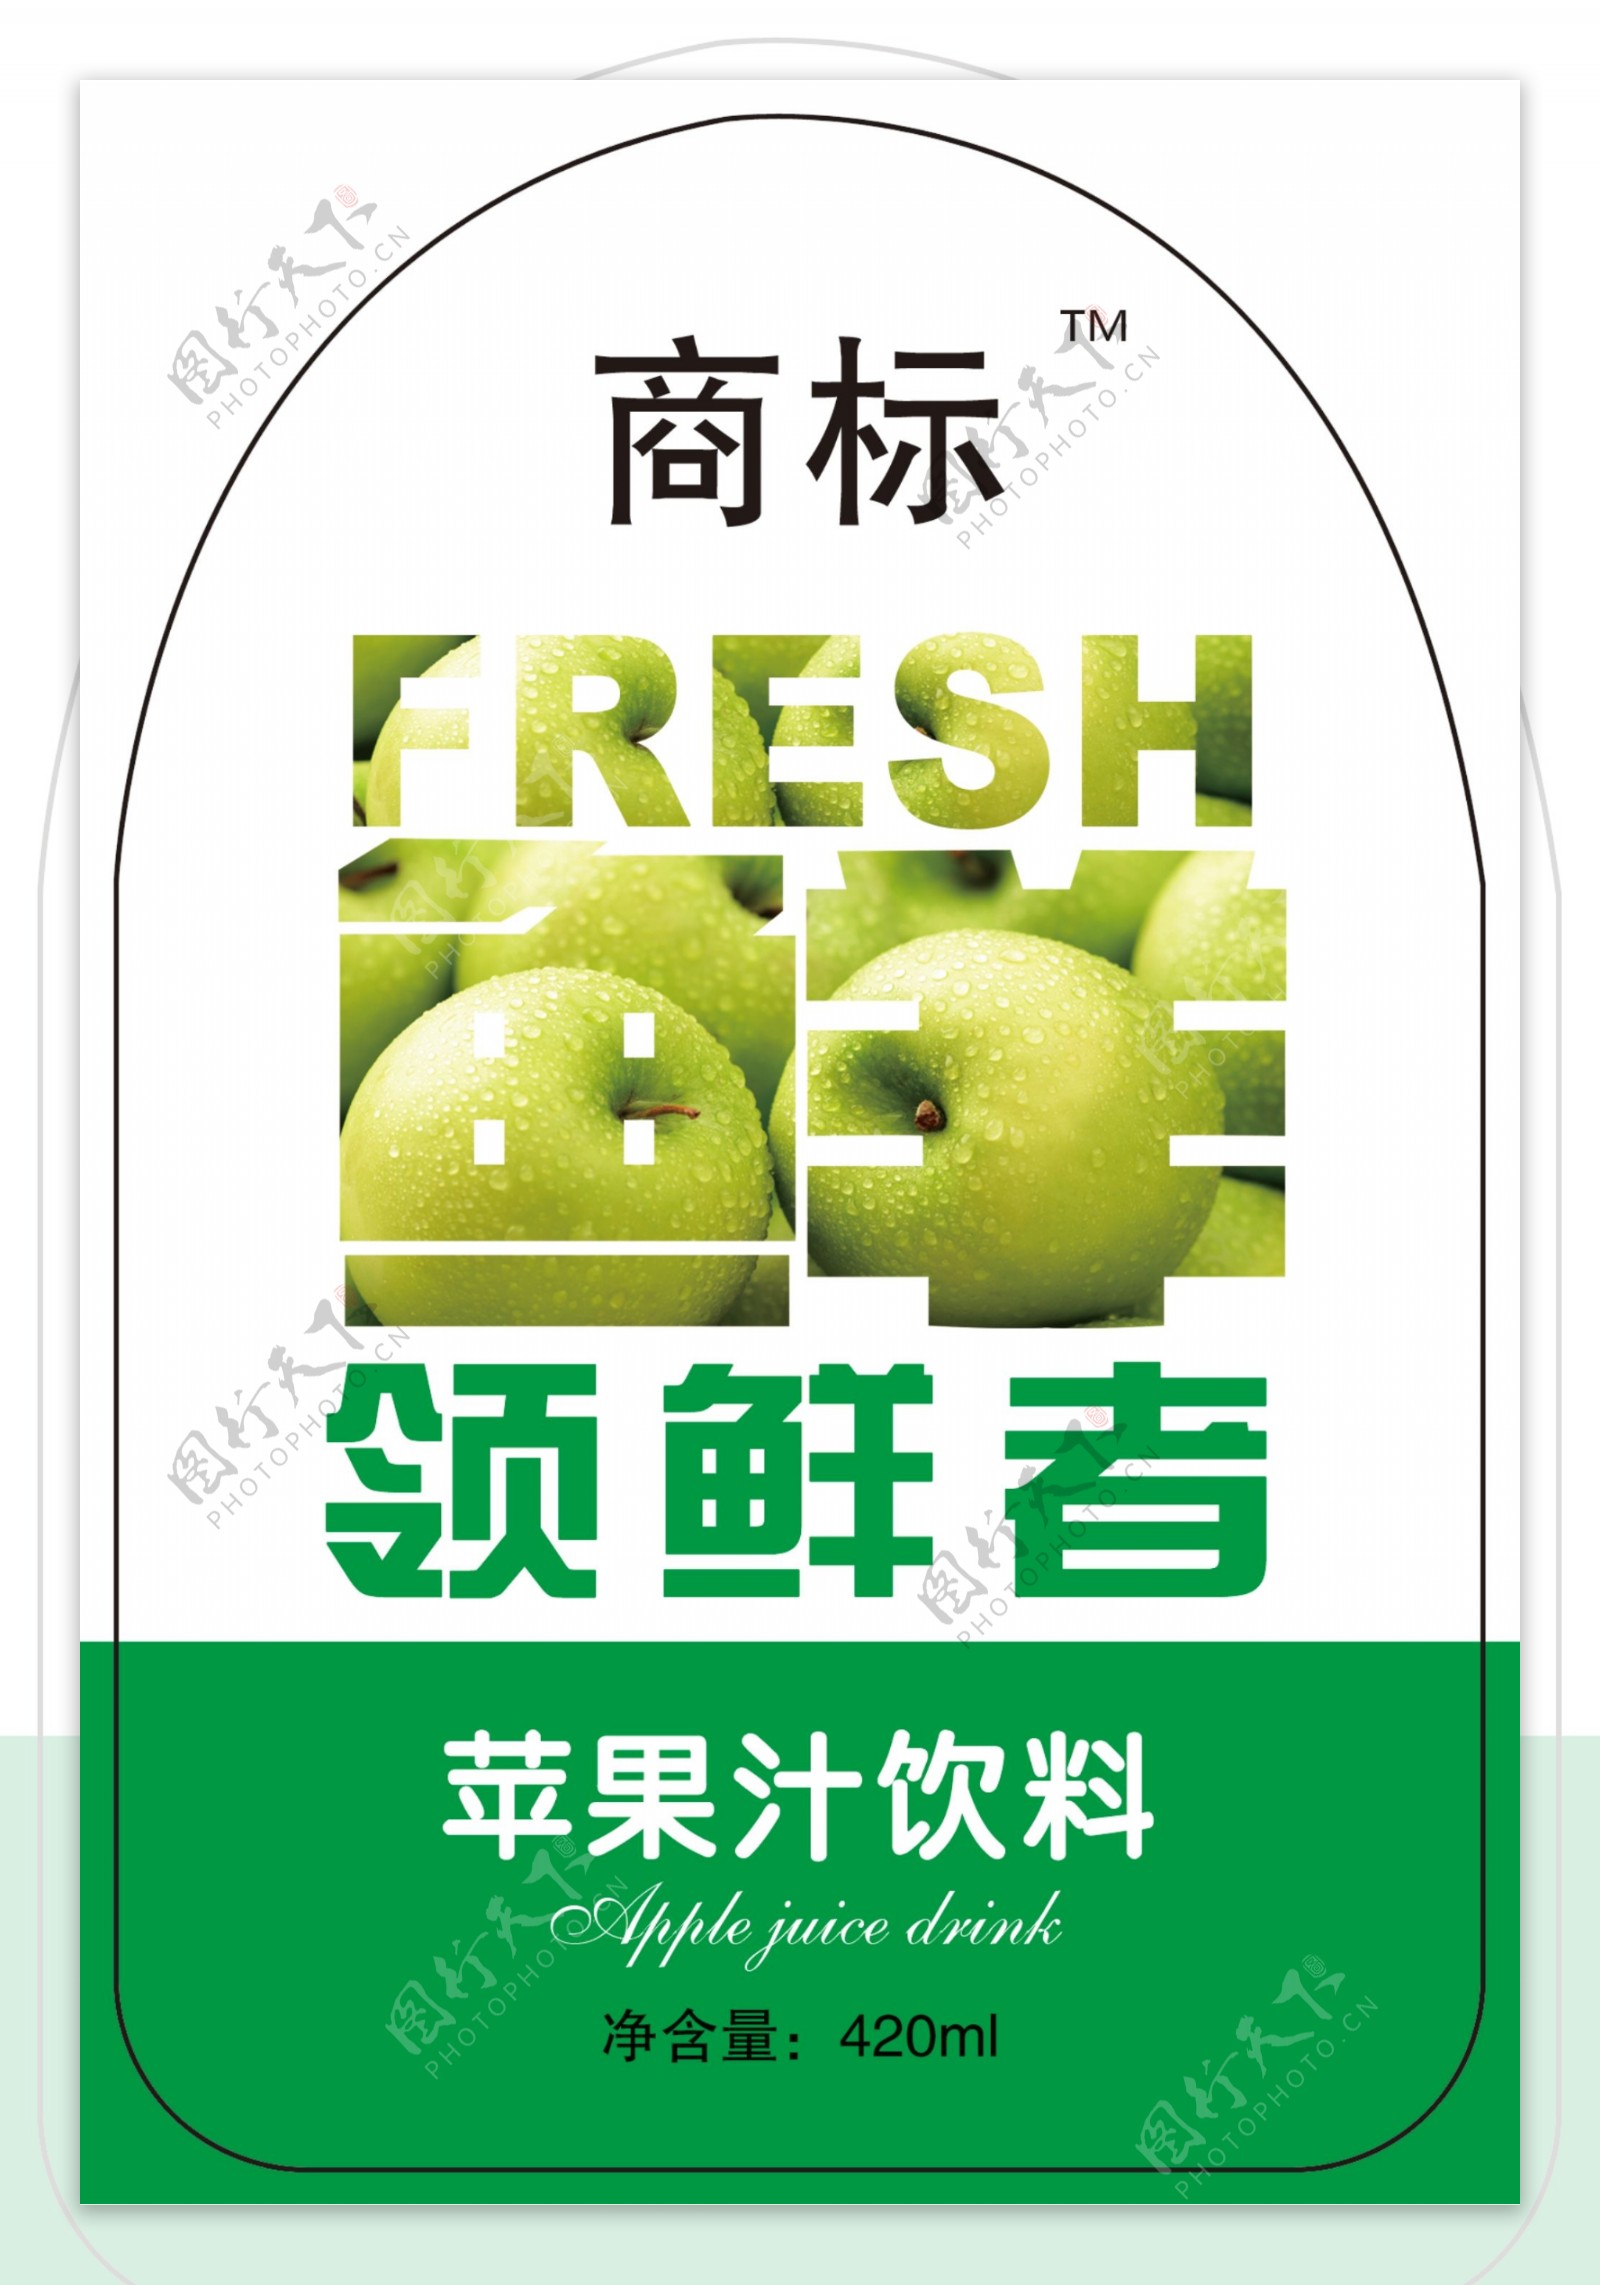 苹果汁饮料标签设计模板